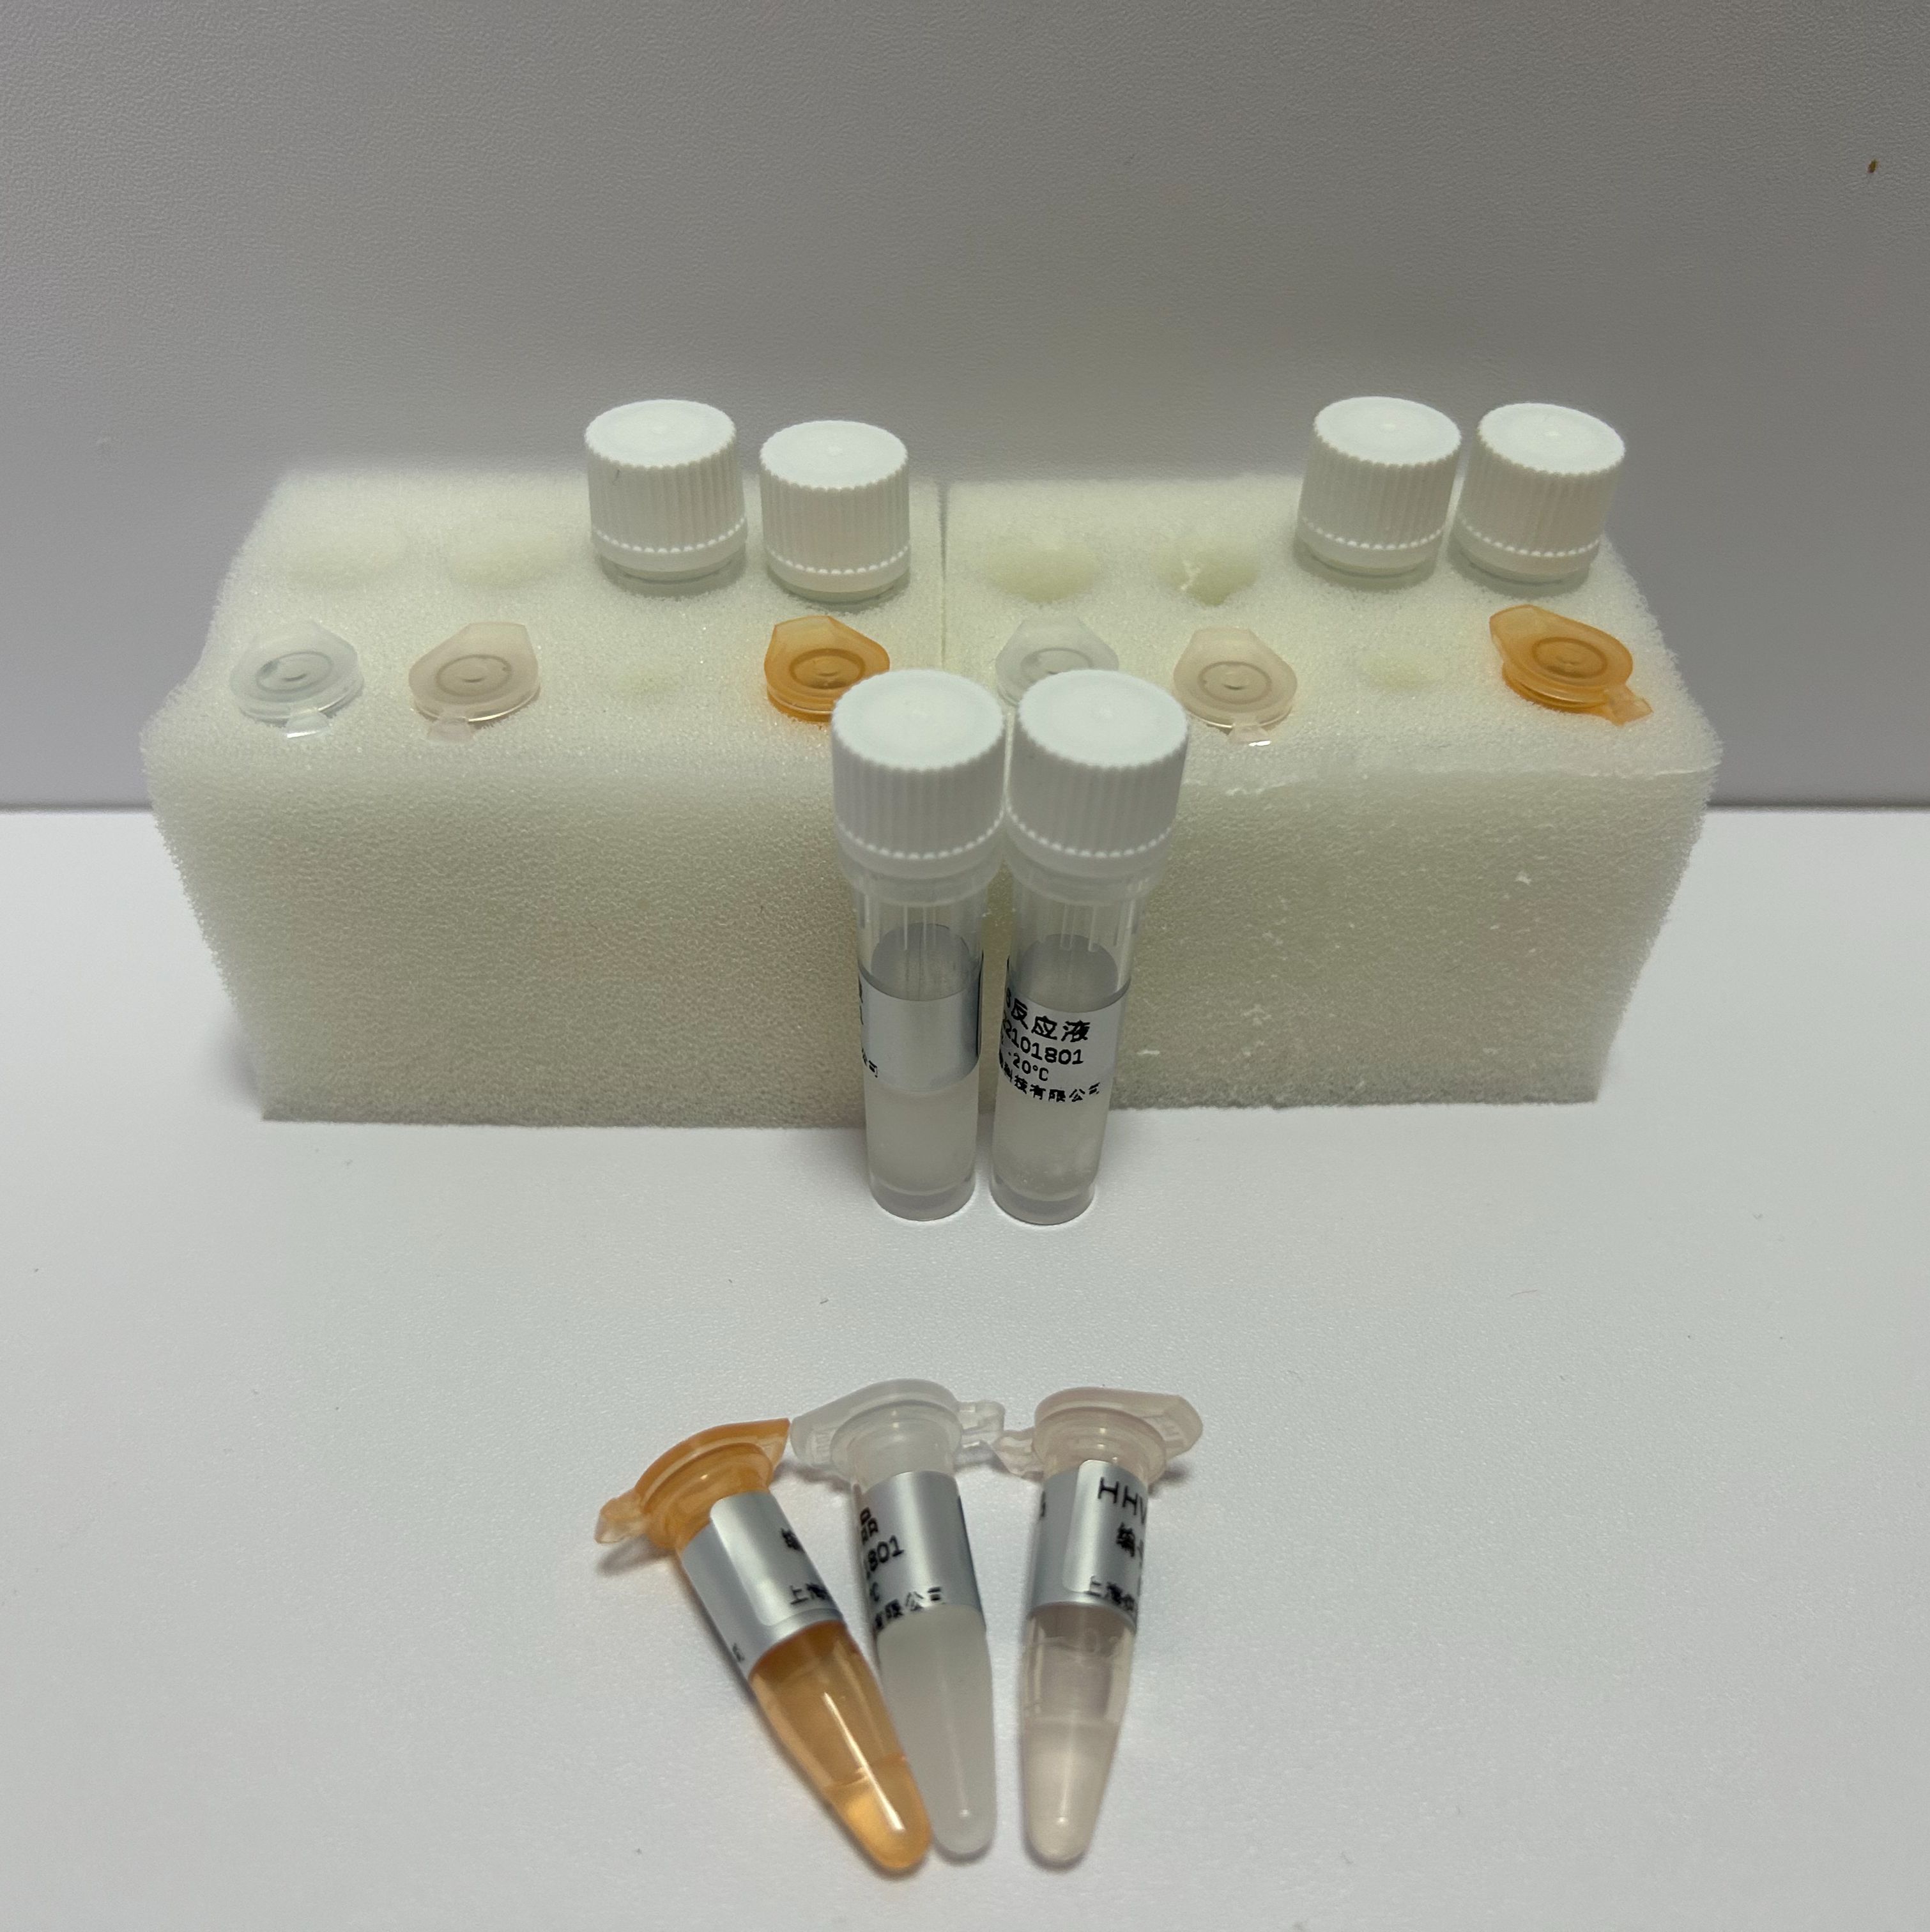 单纯疱疹病毒2型染料法荧光定量PCR试剂盒